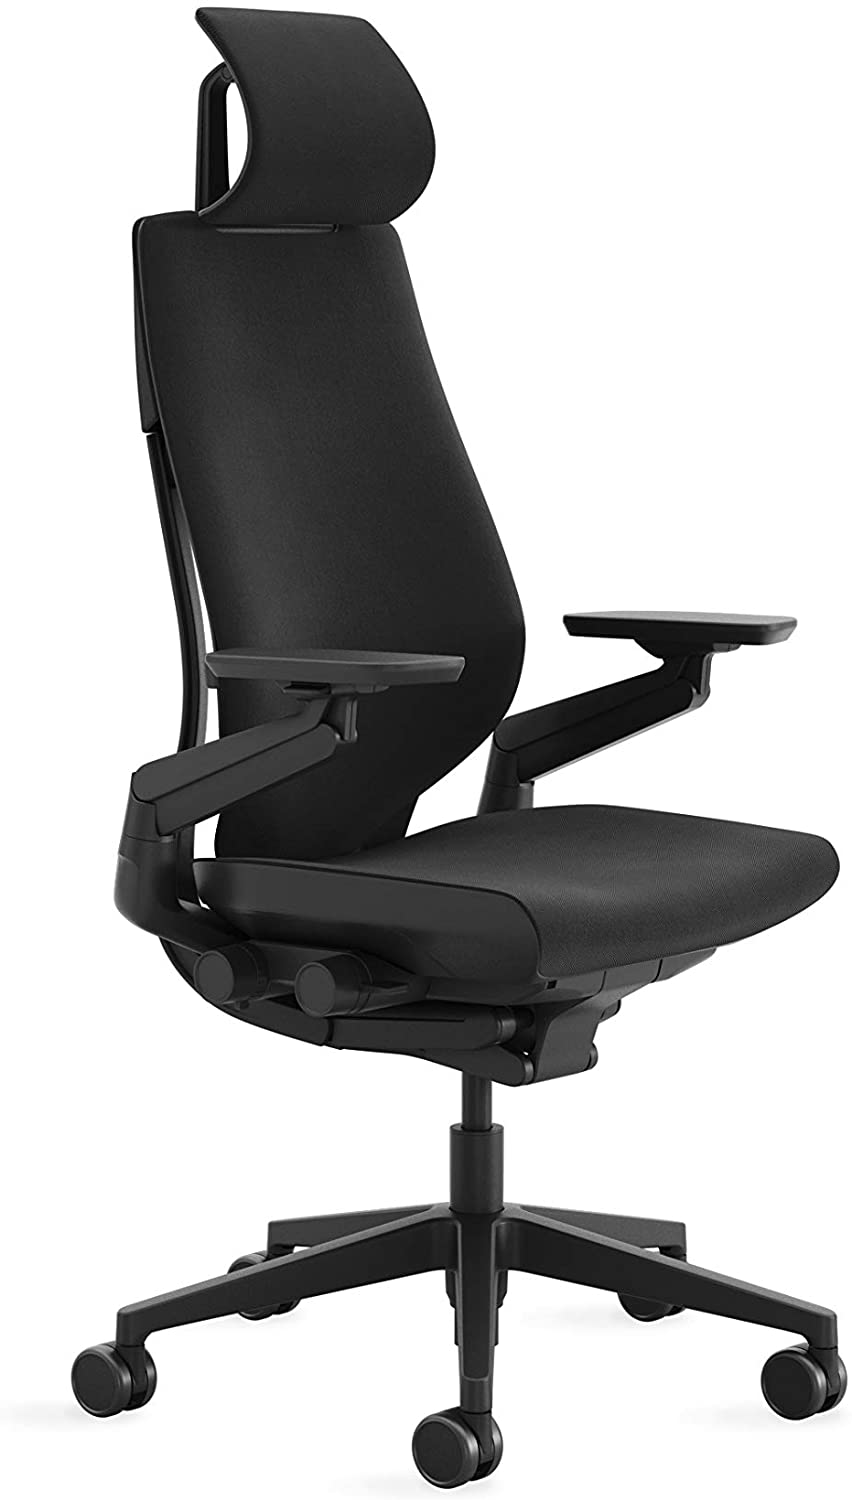 Steelcase Gesture chair with headrest